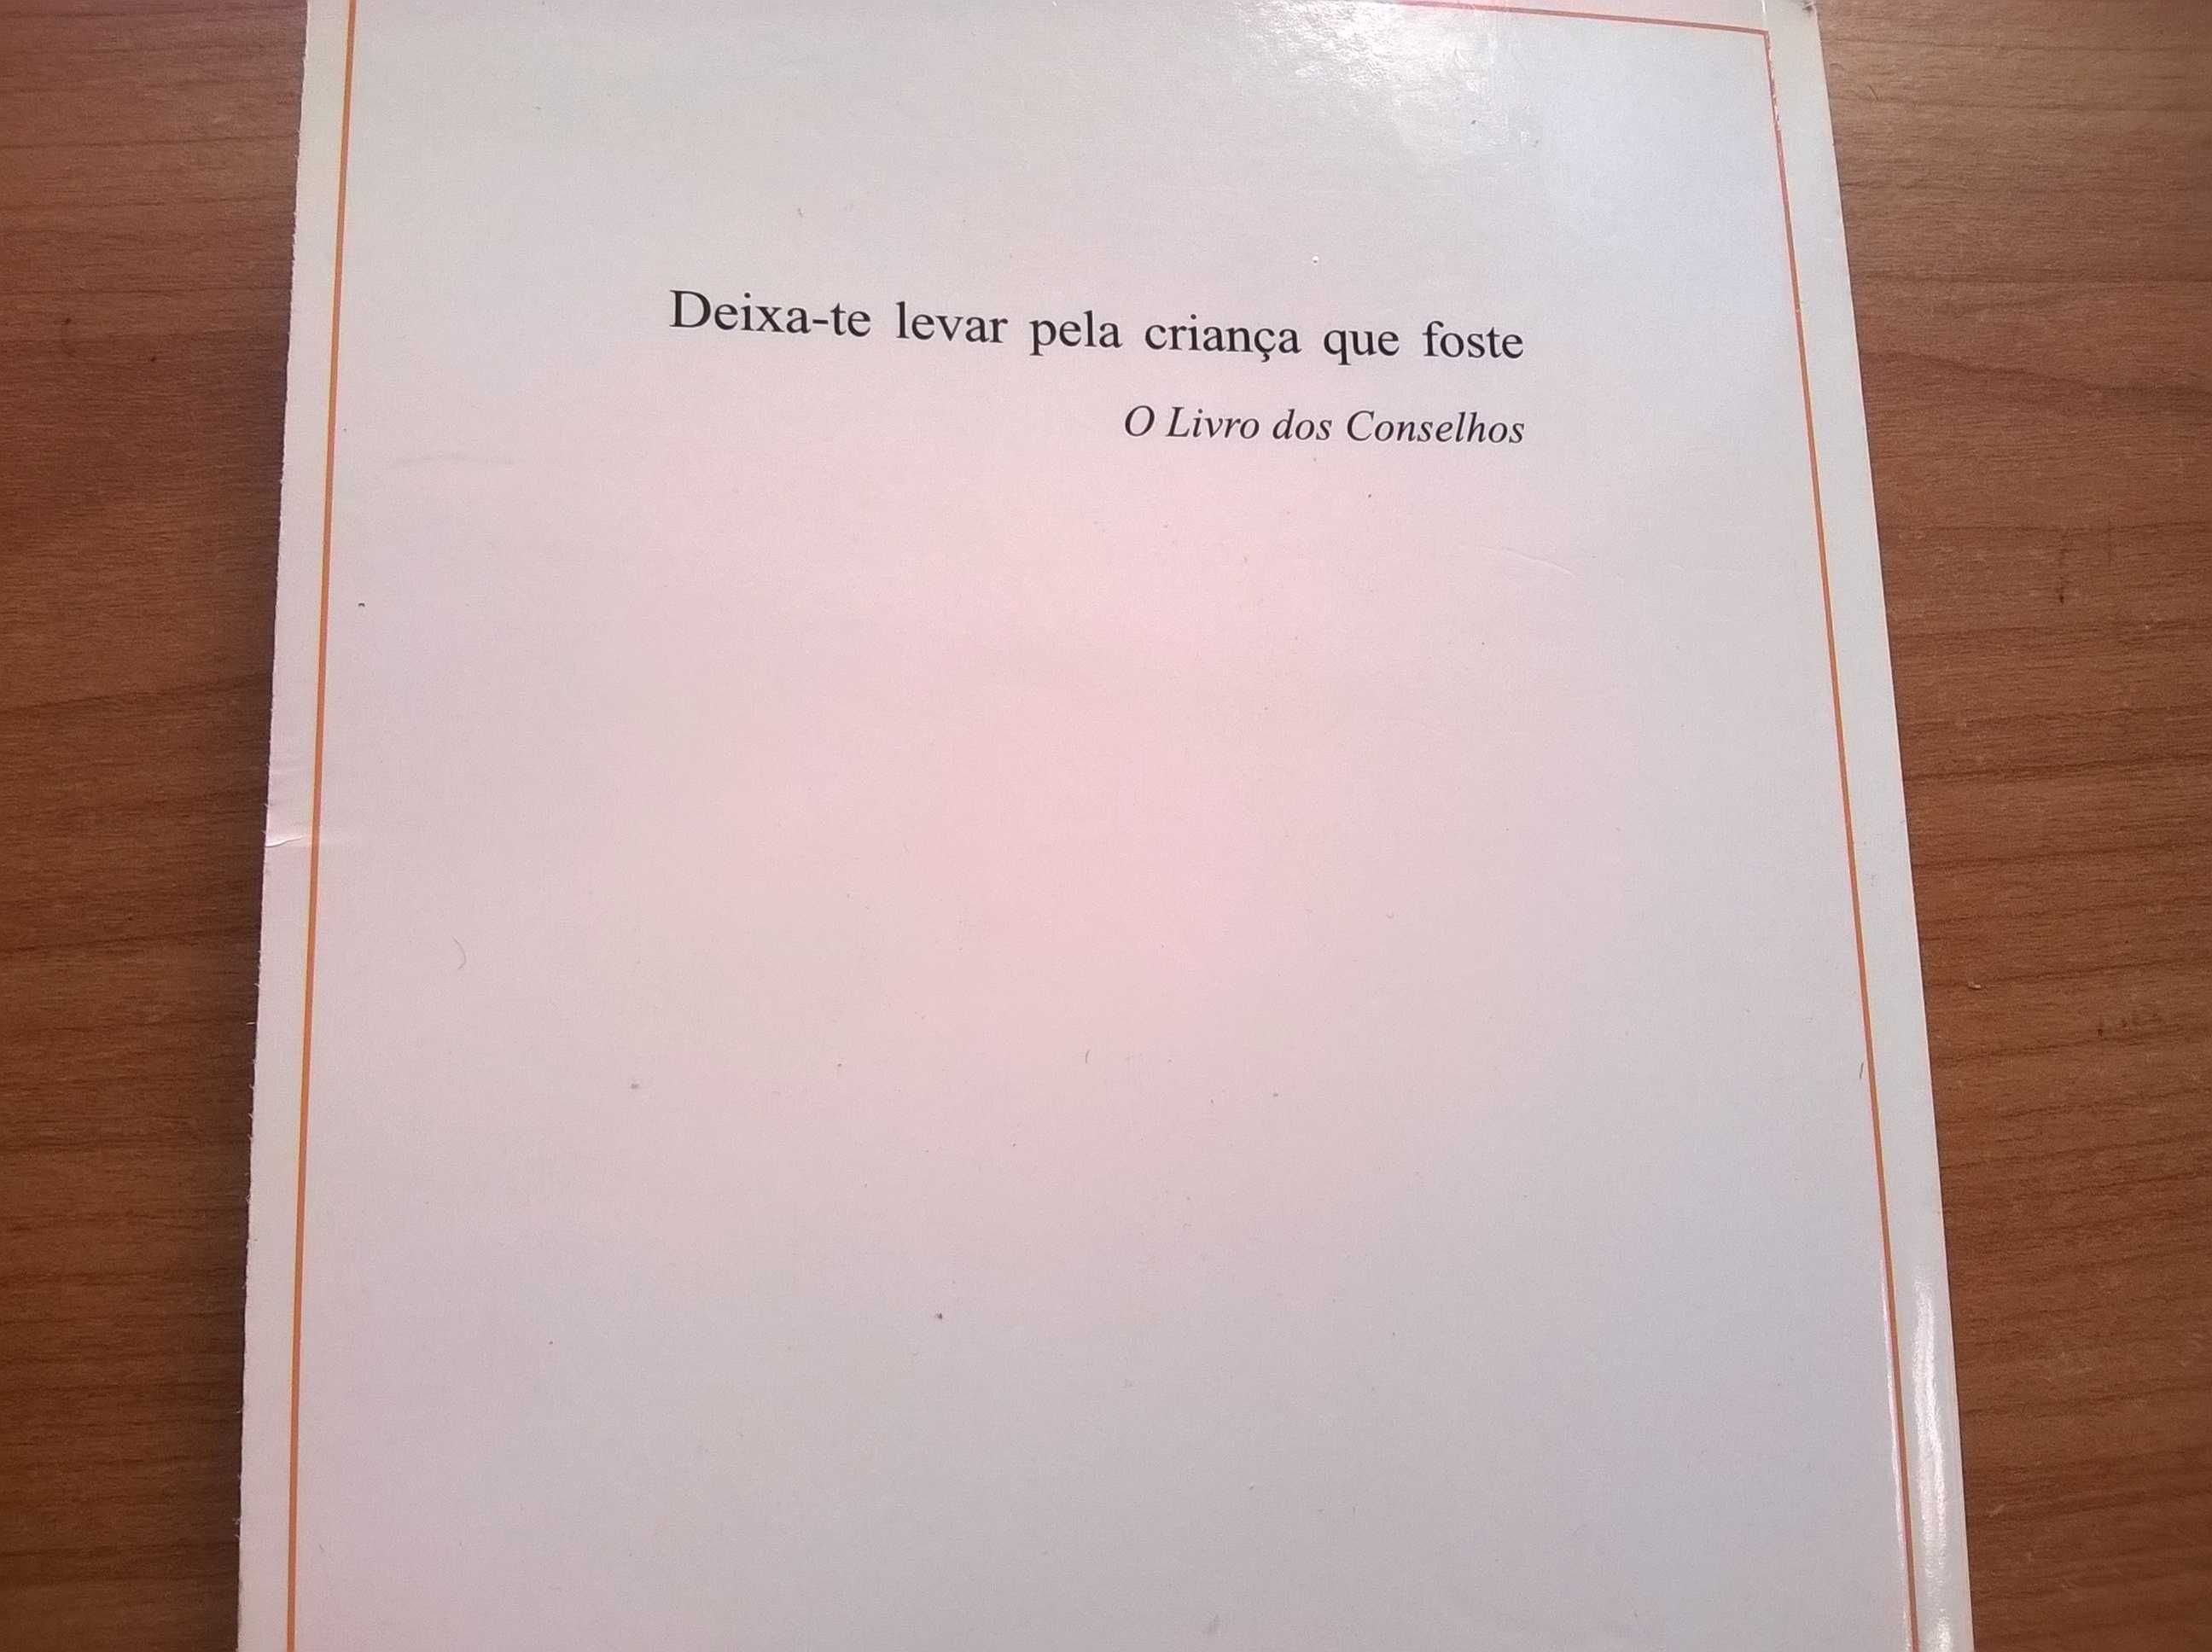 As Pequenas Memórias (1.ª ed.) - José Saramago